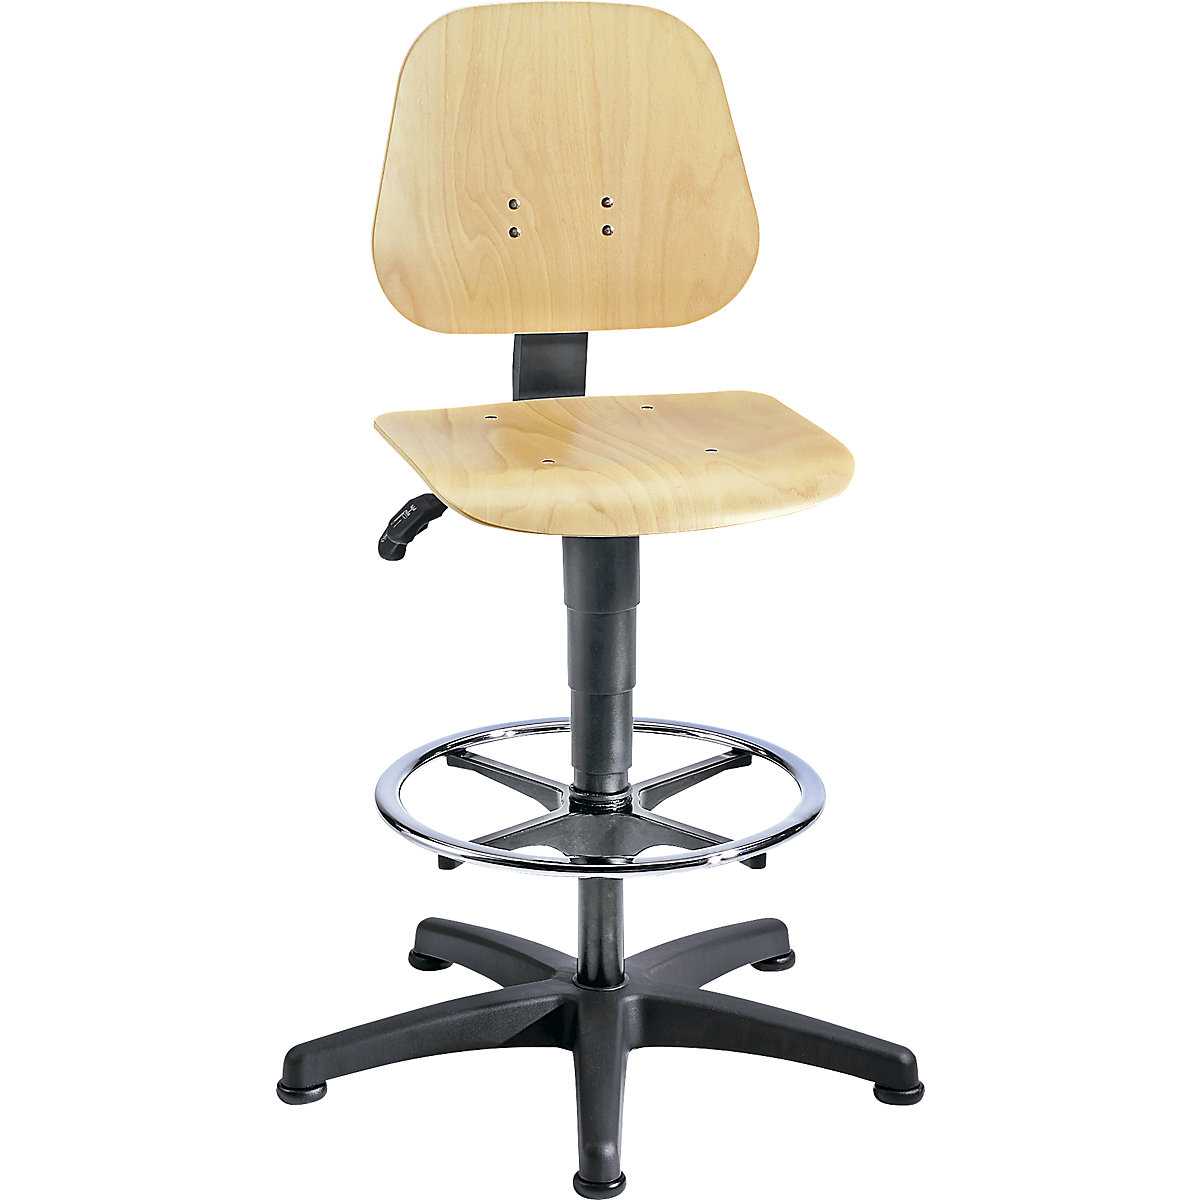 Okretni radni stolac – bimos, s namještanjem visine pomoću plinske opruge, slojevito drvo bukve, s podnim vodilicama i nožnim obručem, od 3 kom.-10